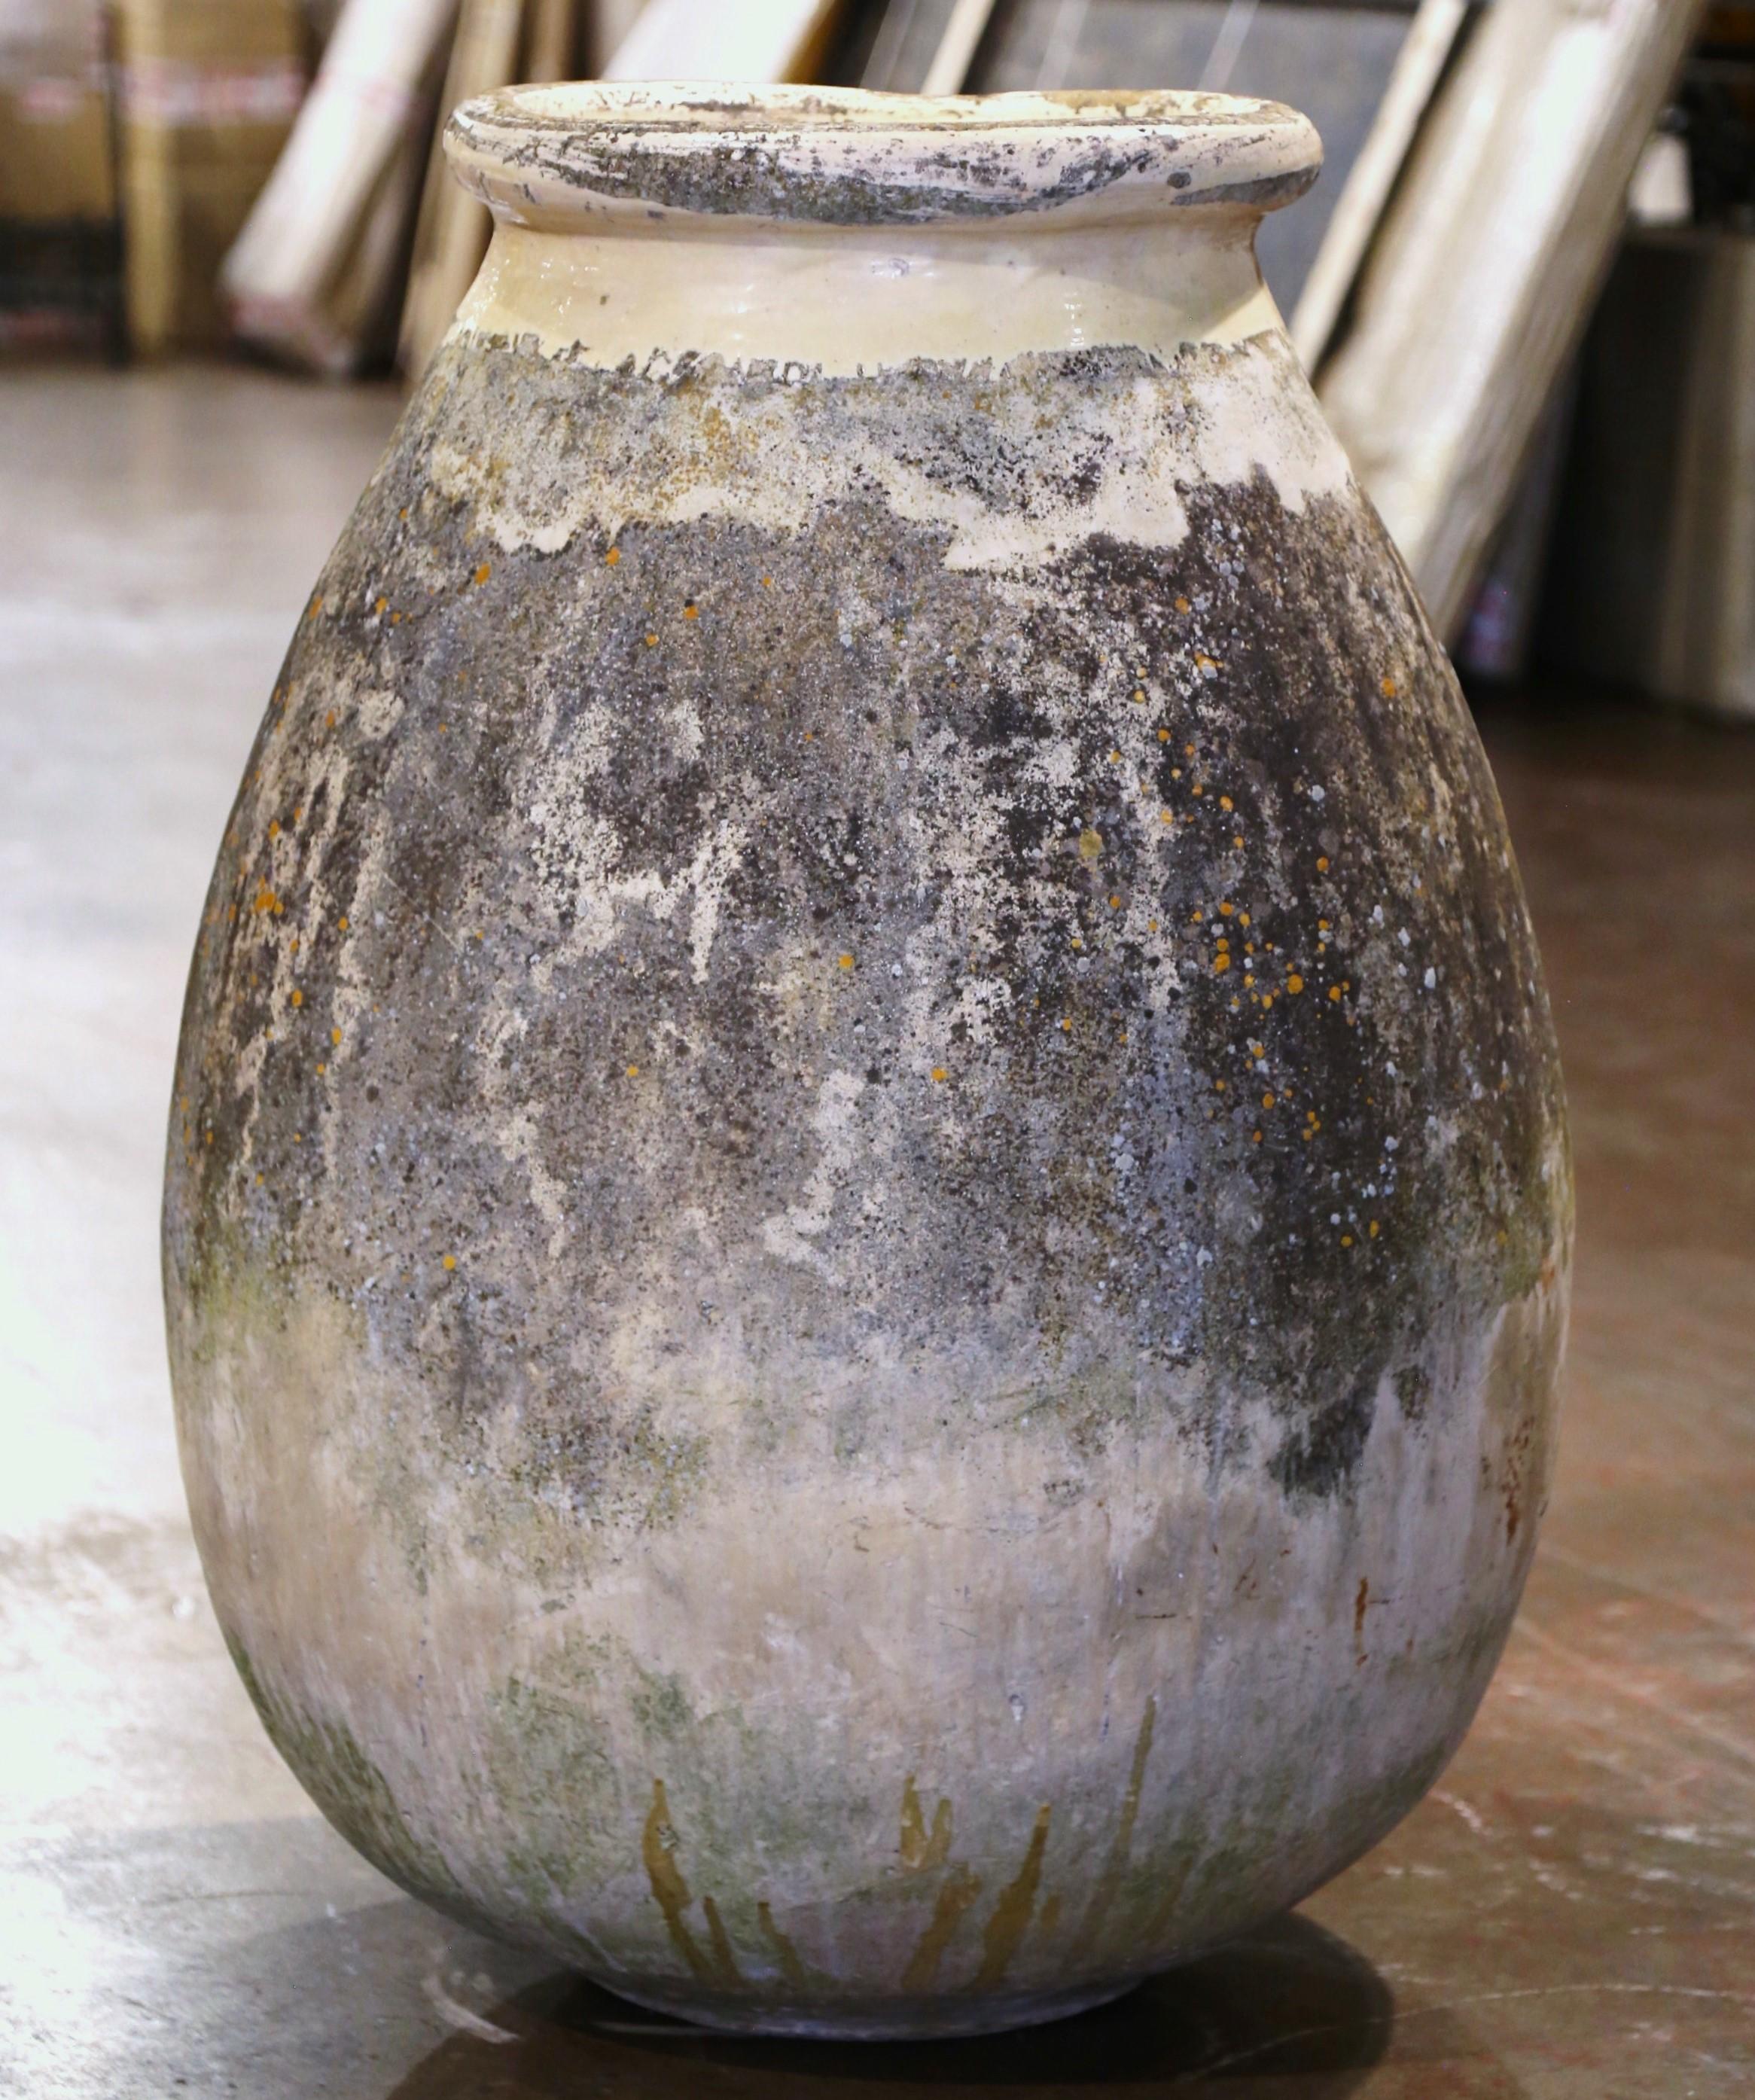 Cette grande jarre à olives ancienne en faïence a été créée à Biot, en Provence, dans le sud de la France, vers 1760. Fabriqué en argile blonde et de couleur neutre, le récipient en terre cuite a une forme ronde et bulbeuse traditionnelle. Ce pot